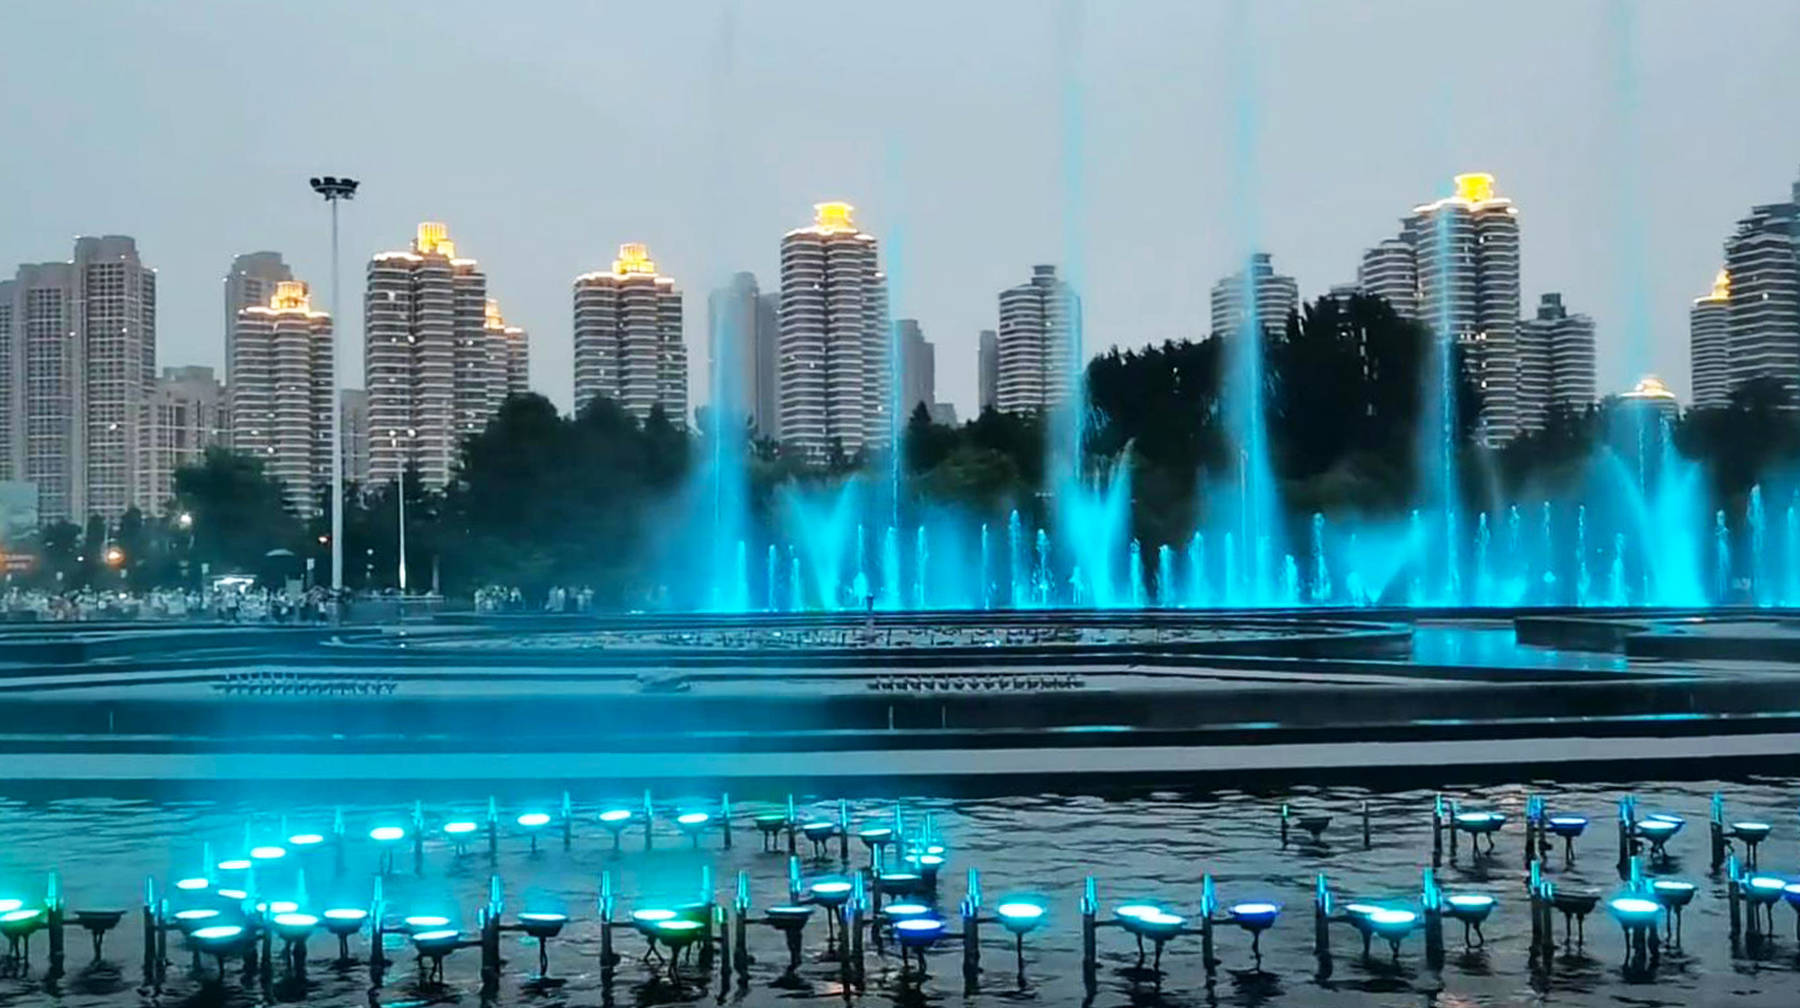 盛夏到武汉闹市这座公园看喷泉,七彩水柱美如画,衬托夜景更浪漫